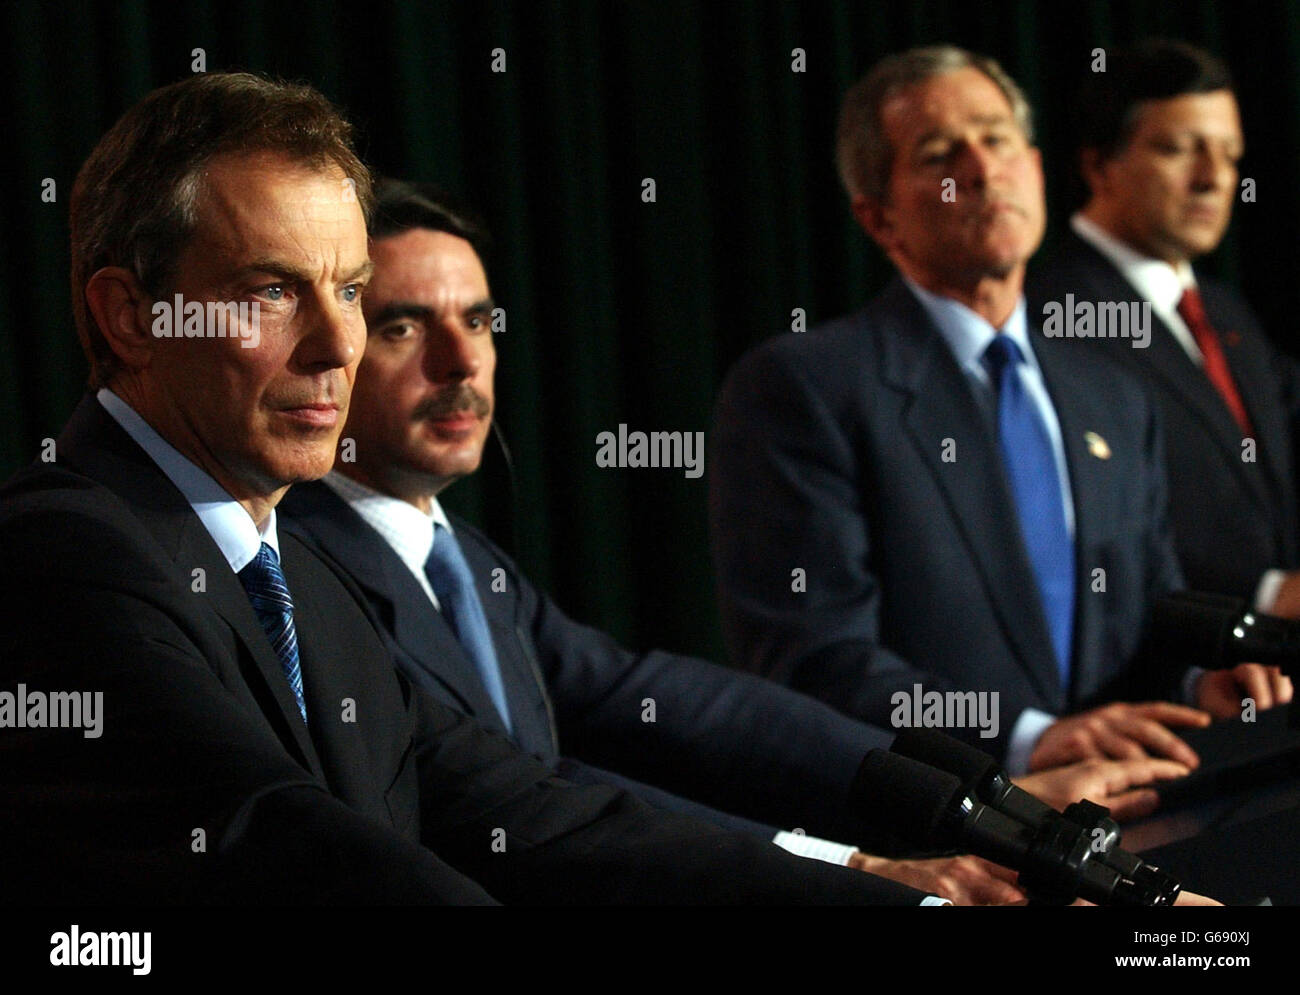 (Von L-R) der britische Premierminister Tony Blair, der spanische Premierminister Jose Maria Aznar, der US-Präsident George Bush und der portugiesische Premierminister Jose Manual Durao Barroso während einer Pressekonferenz auf den Azoren, wo Gespräche über den Irak abgehalten wurden. Stockfoto